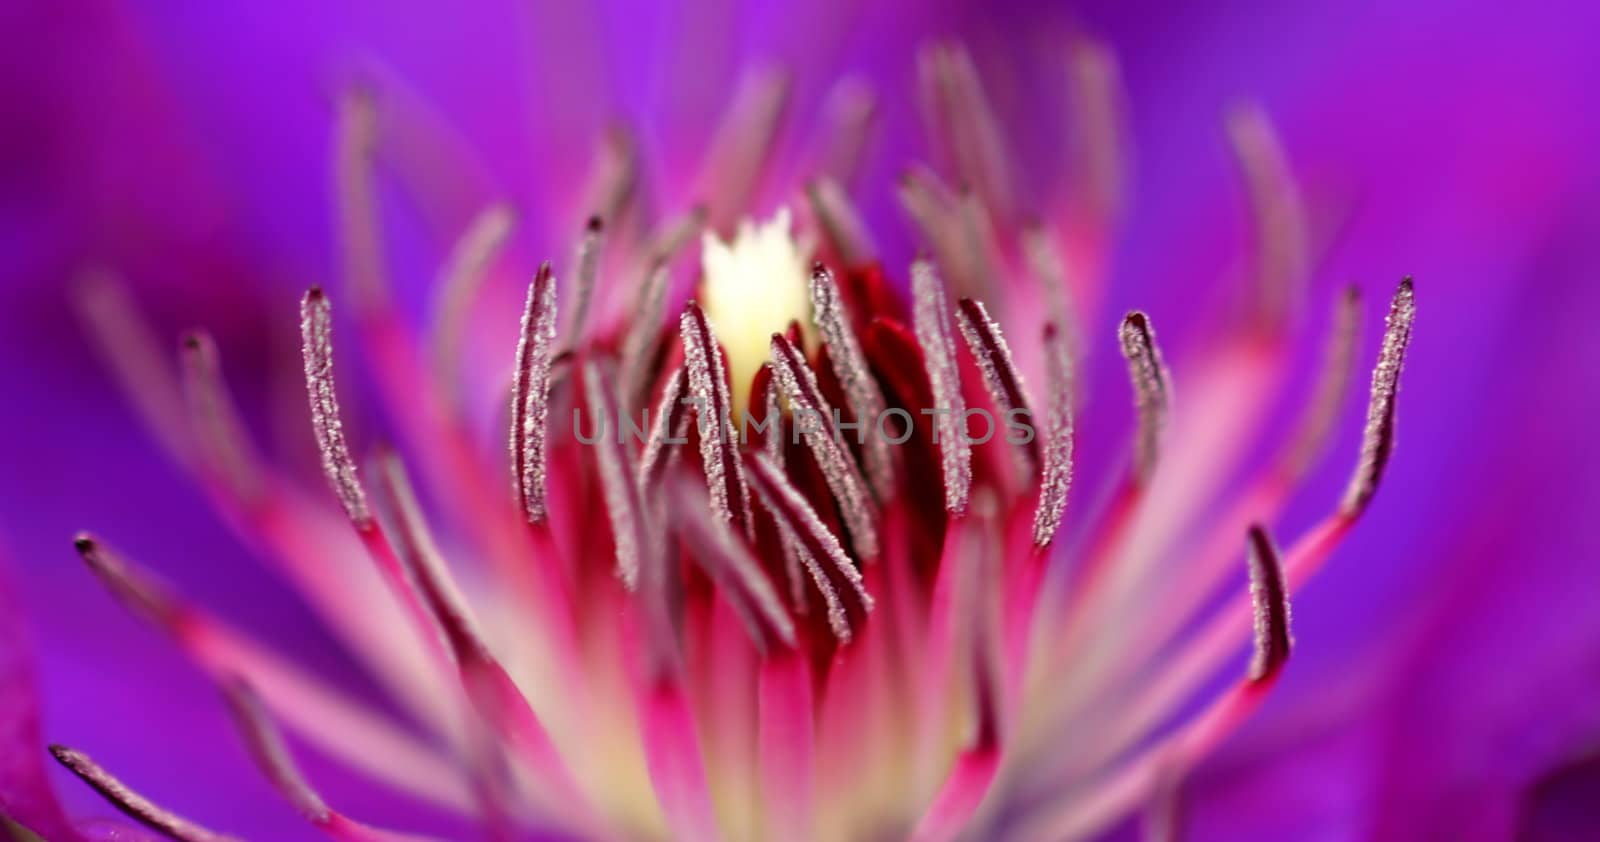 Macro shot of the inside of a purple flower.